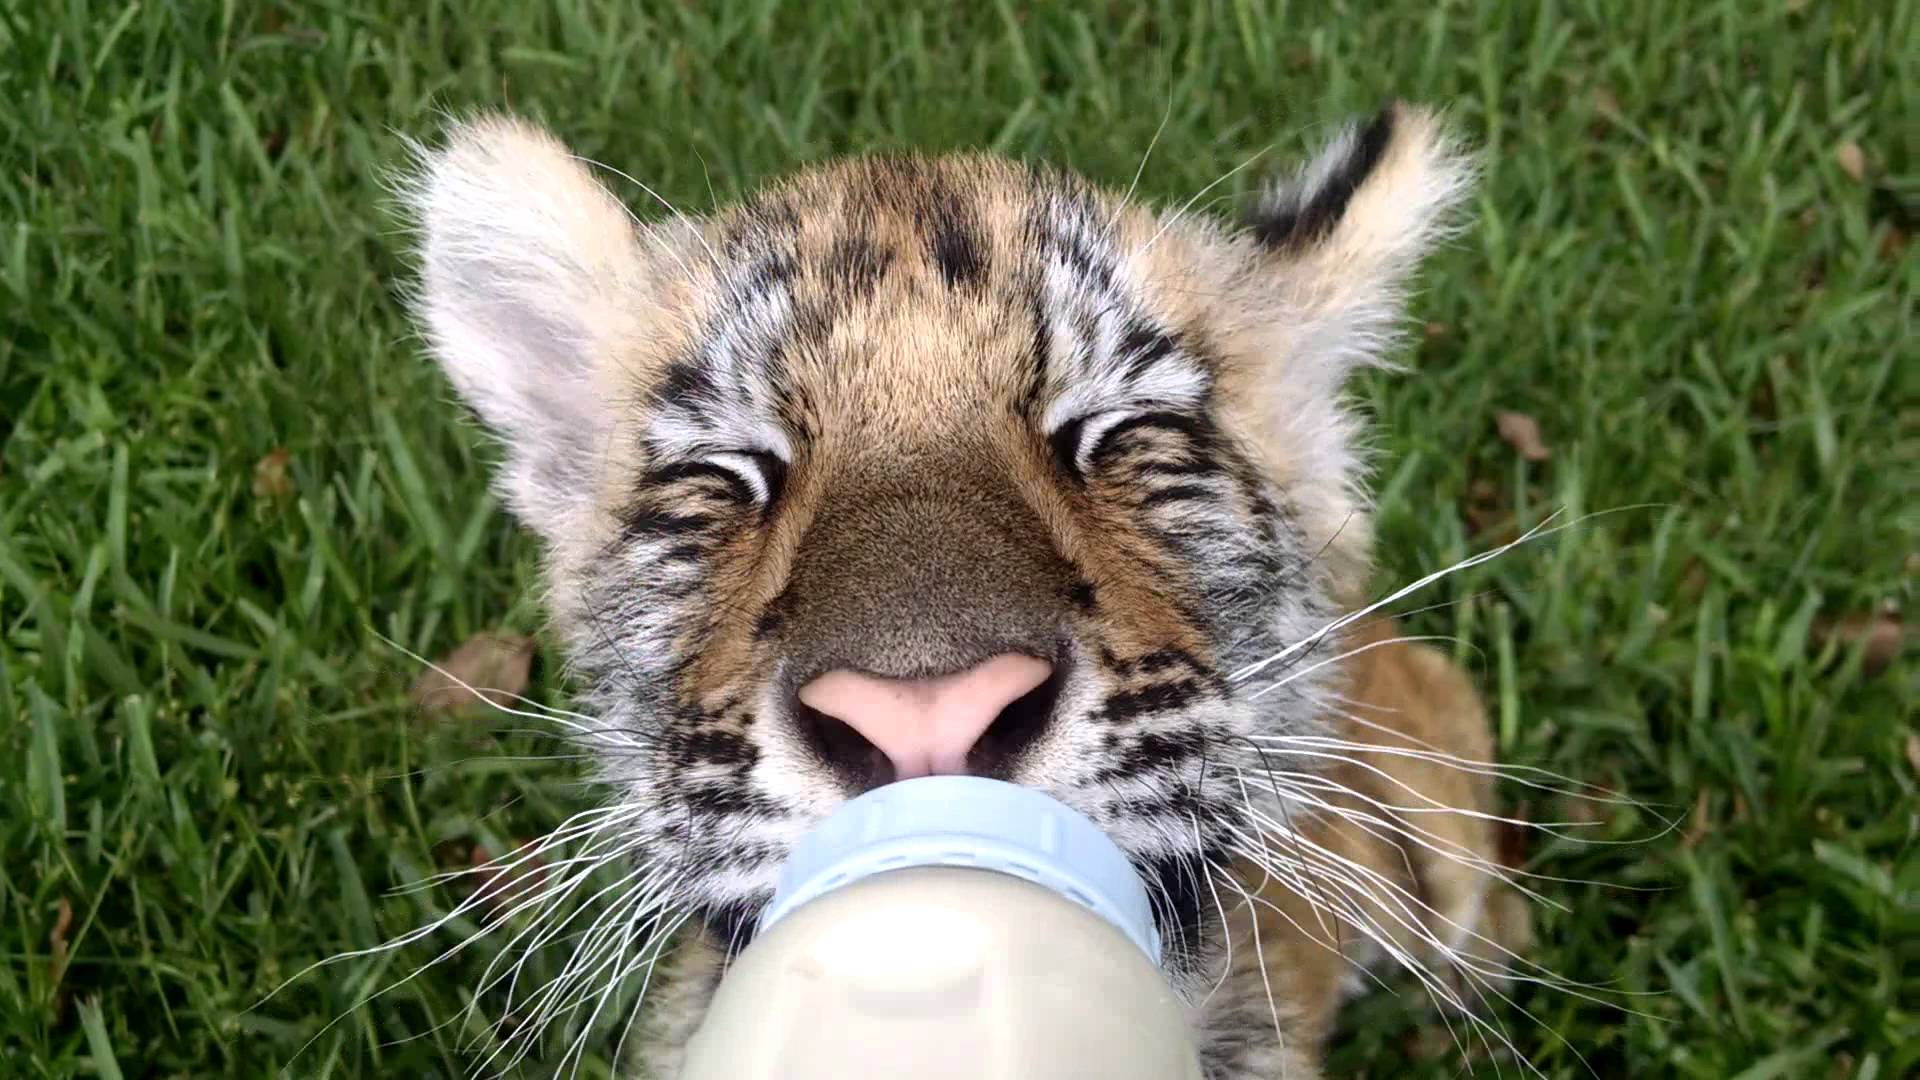 Cutest Tiger Cub Drinking Milk - YouTube